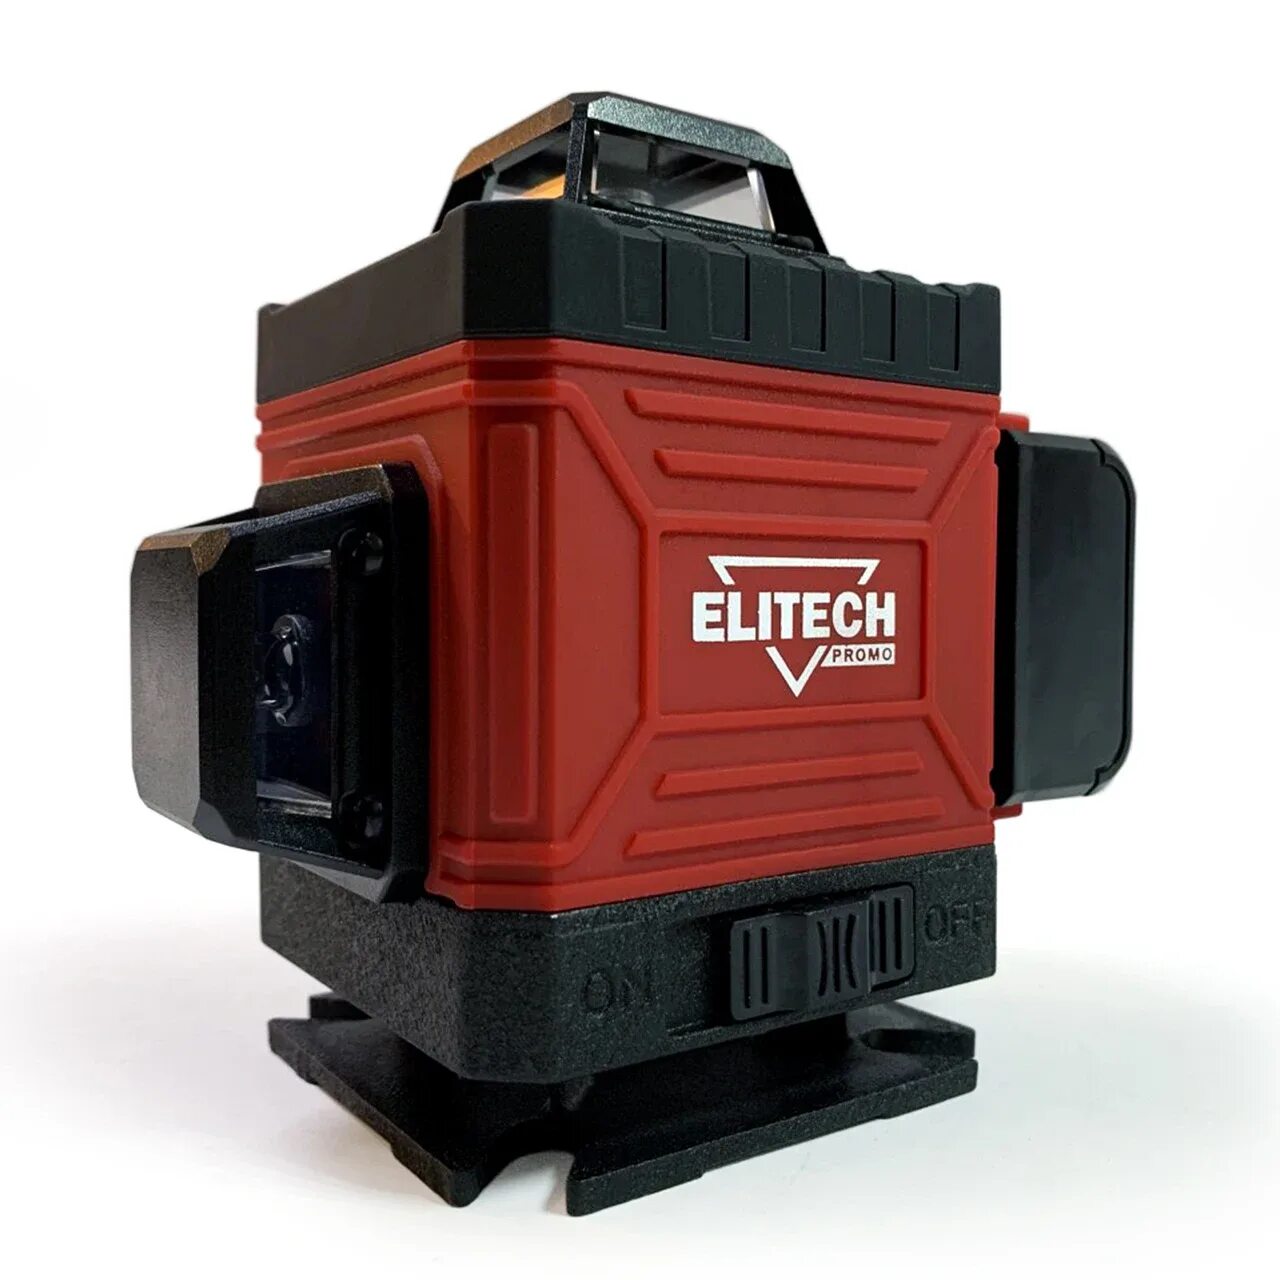 Лазерный нивелир Elitech ЛН 16-зел промо. Лазерный нивелир 3/360 Elitech промо. Elitech 4\360. Лазерный уровень Элитеч 360 зеленый.